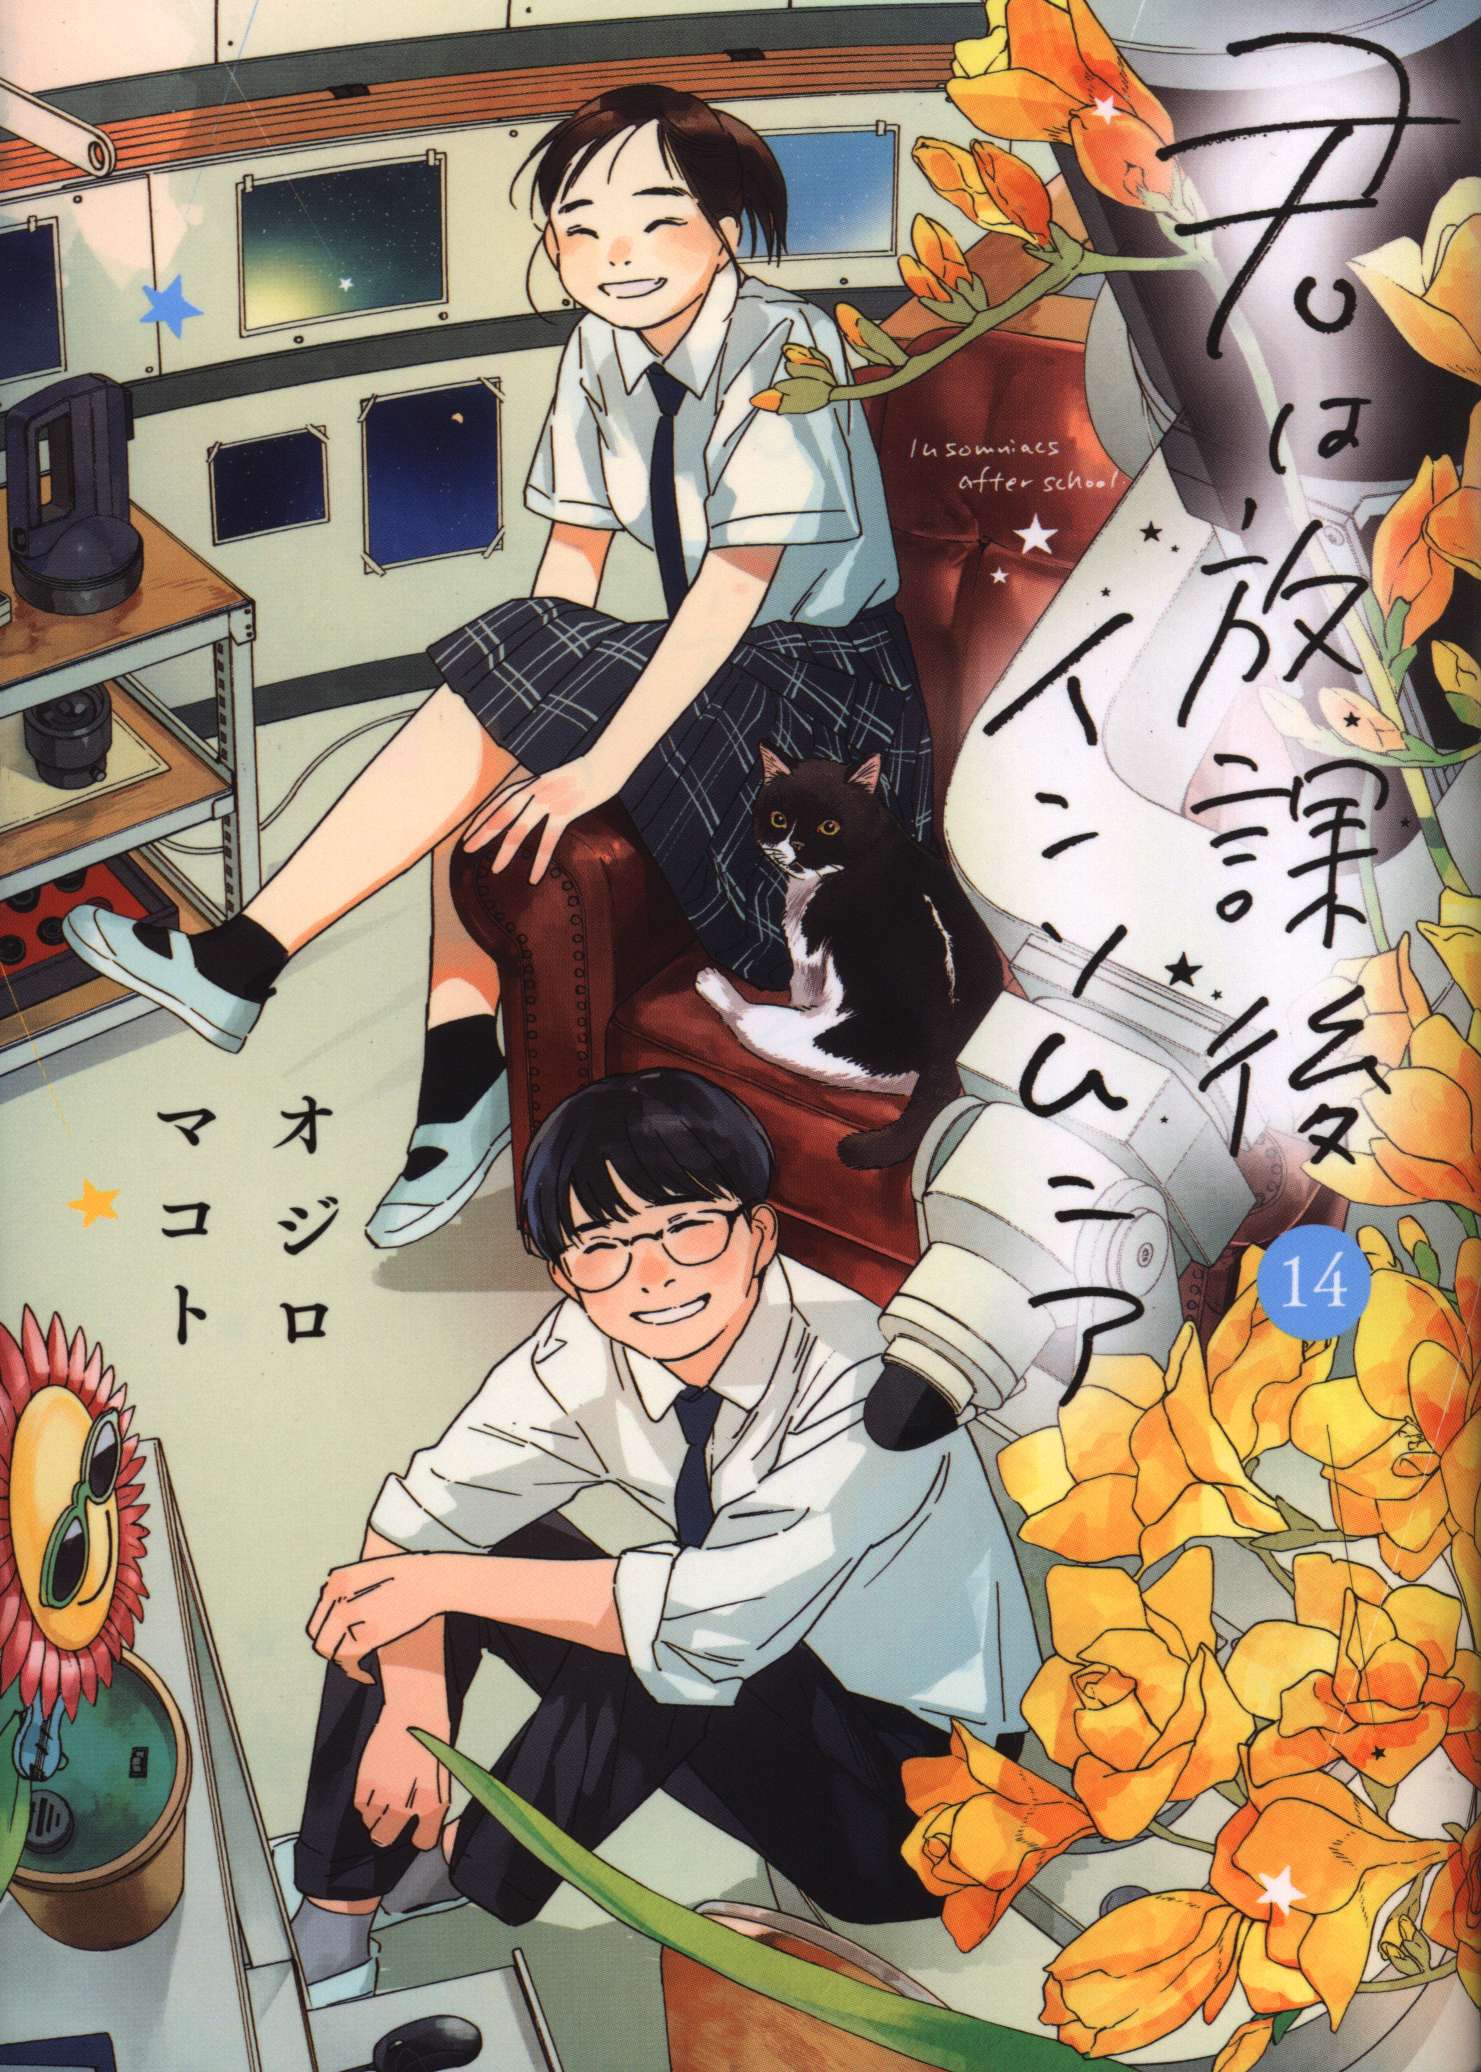 DISC] Insomniacs After School - Vol. 12 Ch. 99 -107 : r/manga